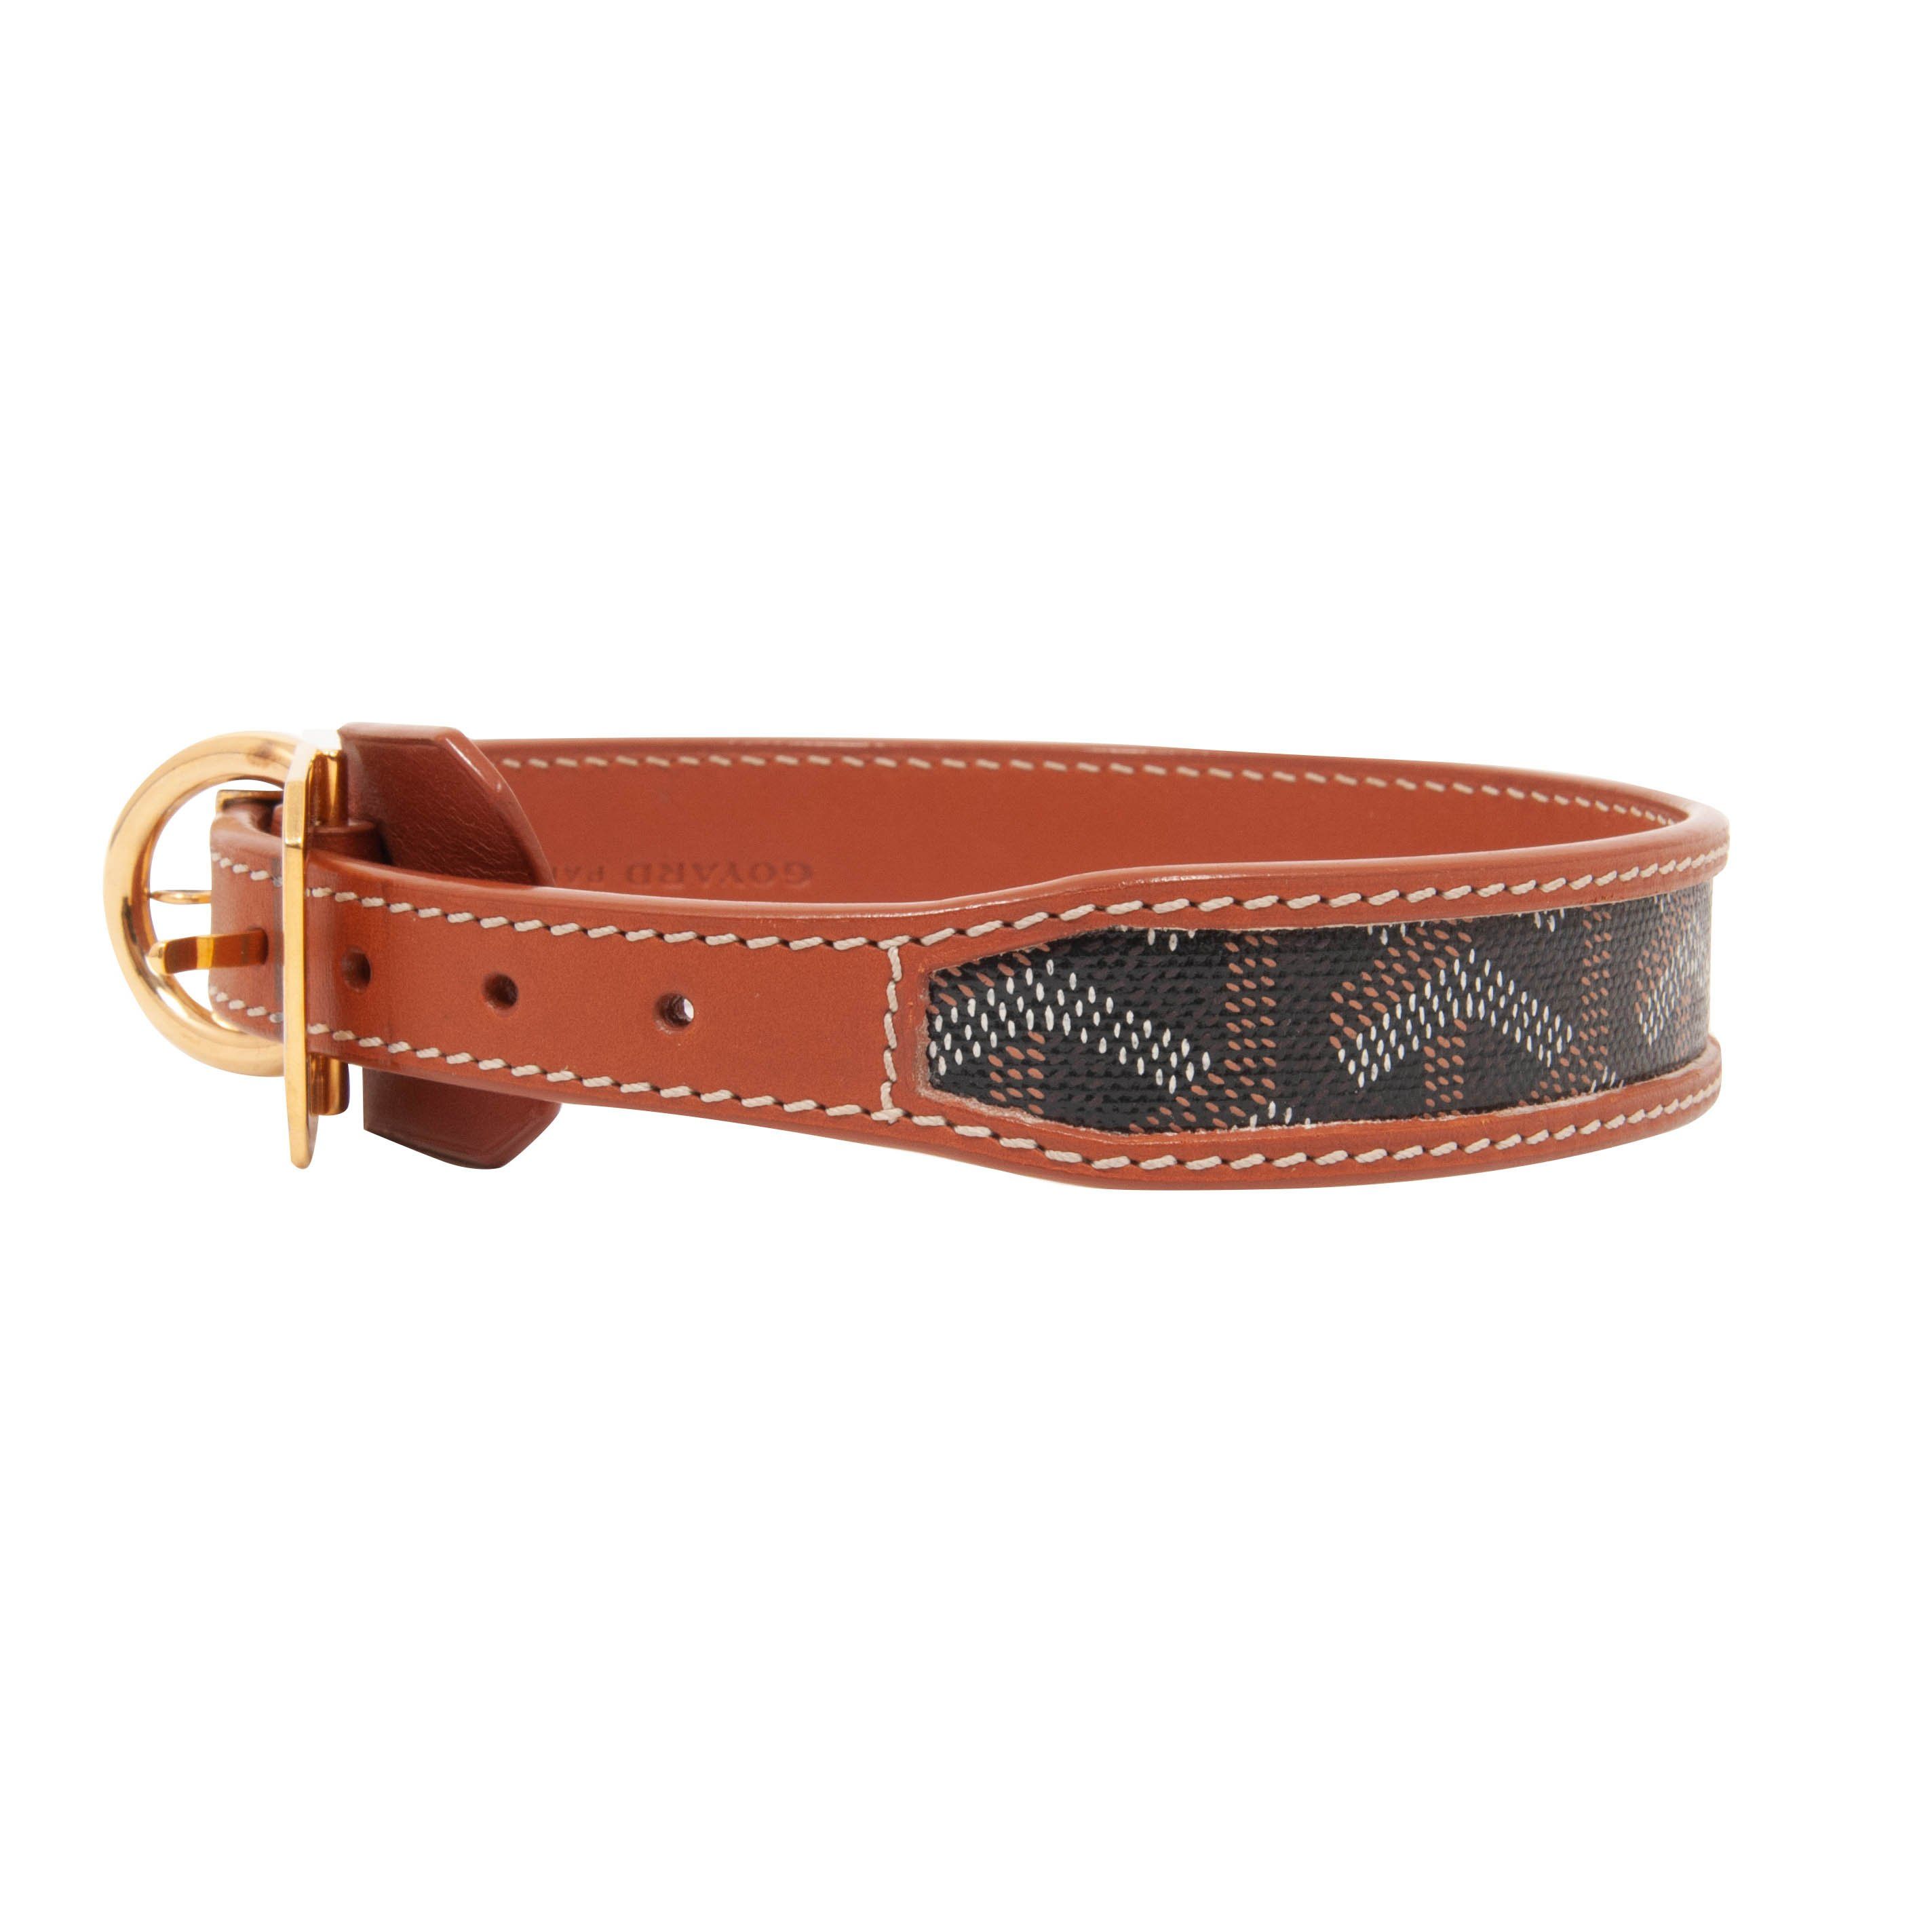 Goyard Dog Collar - For Sale on 1stDibs  goyard dog leash price, dog  goyard collar, goyard dog collar cost